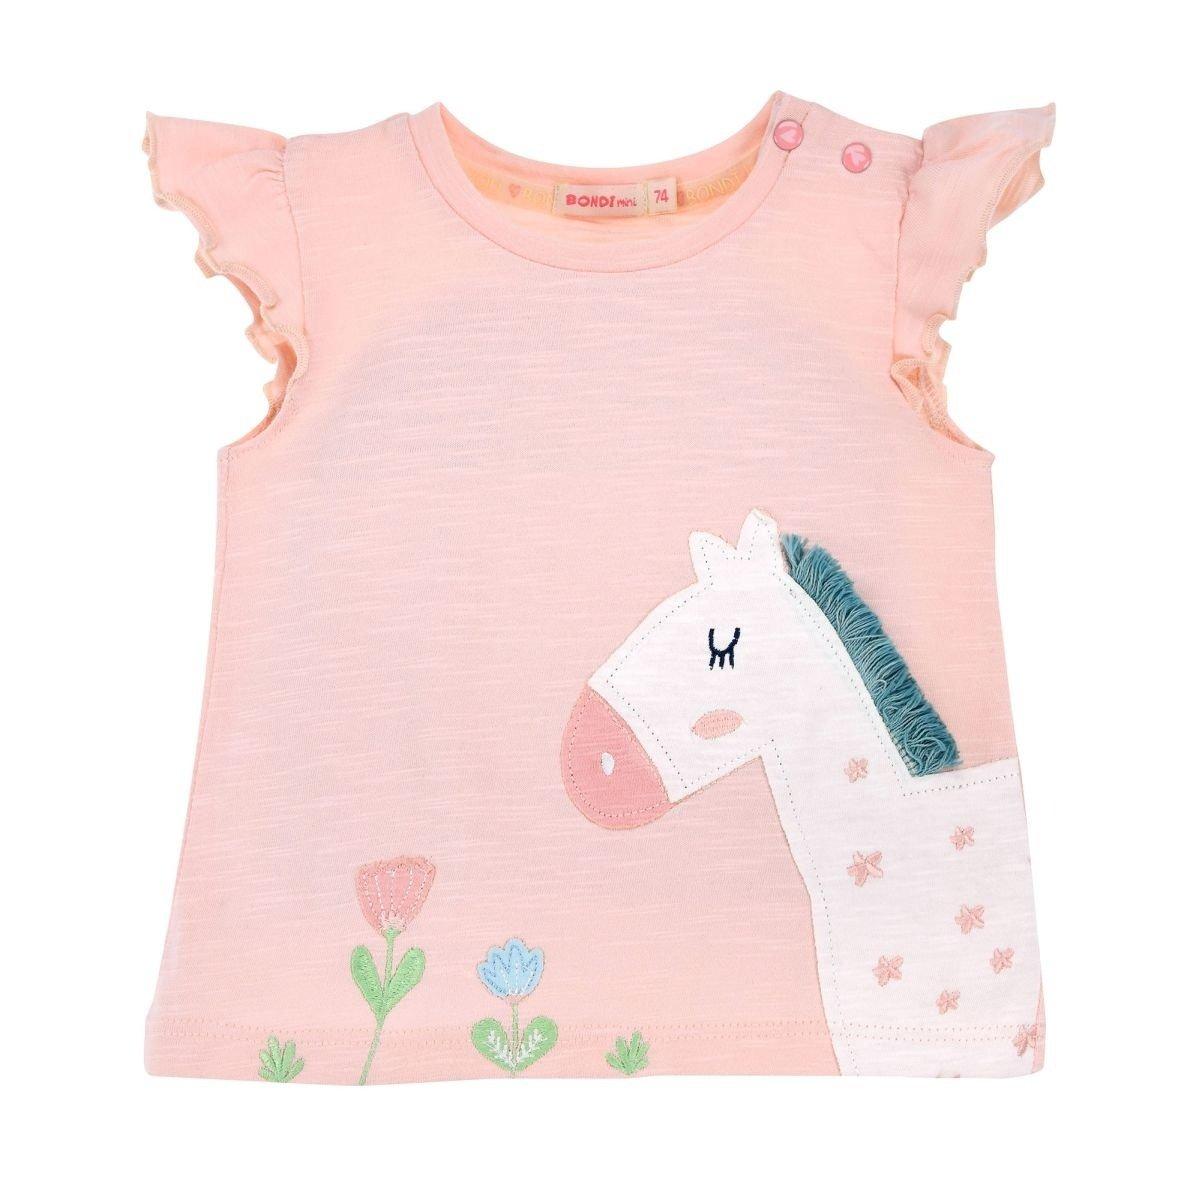 Kleinkinder T-shirt Little Horse Mädchen Rosa 68 von Bondi